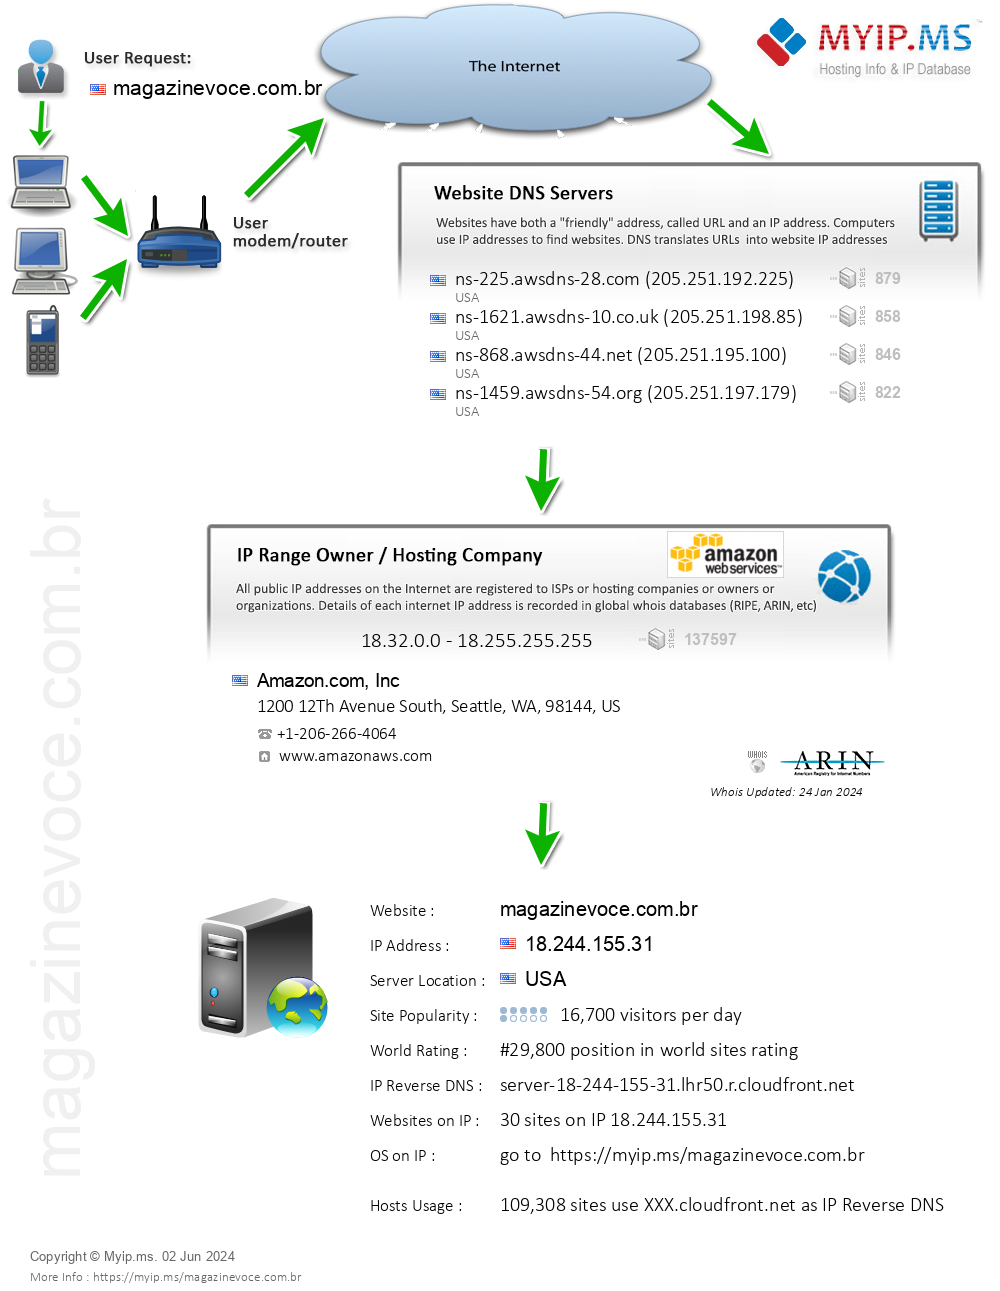 Magazinevoce.com.br - Website Hosting Visual IP Diagram